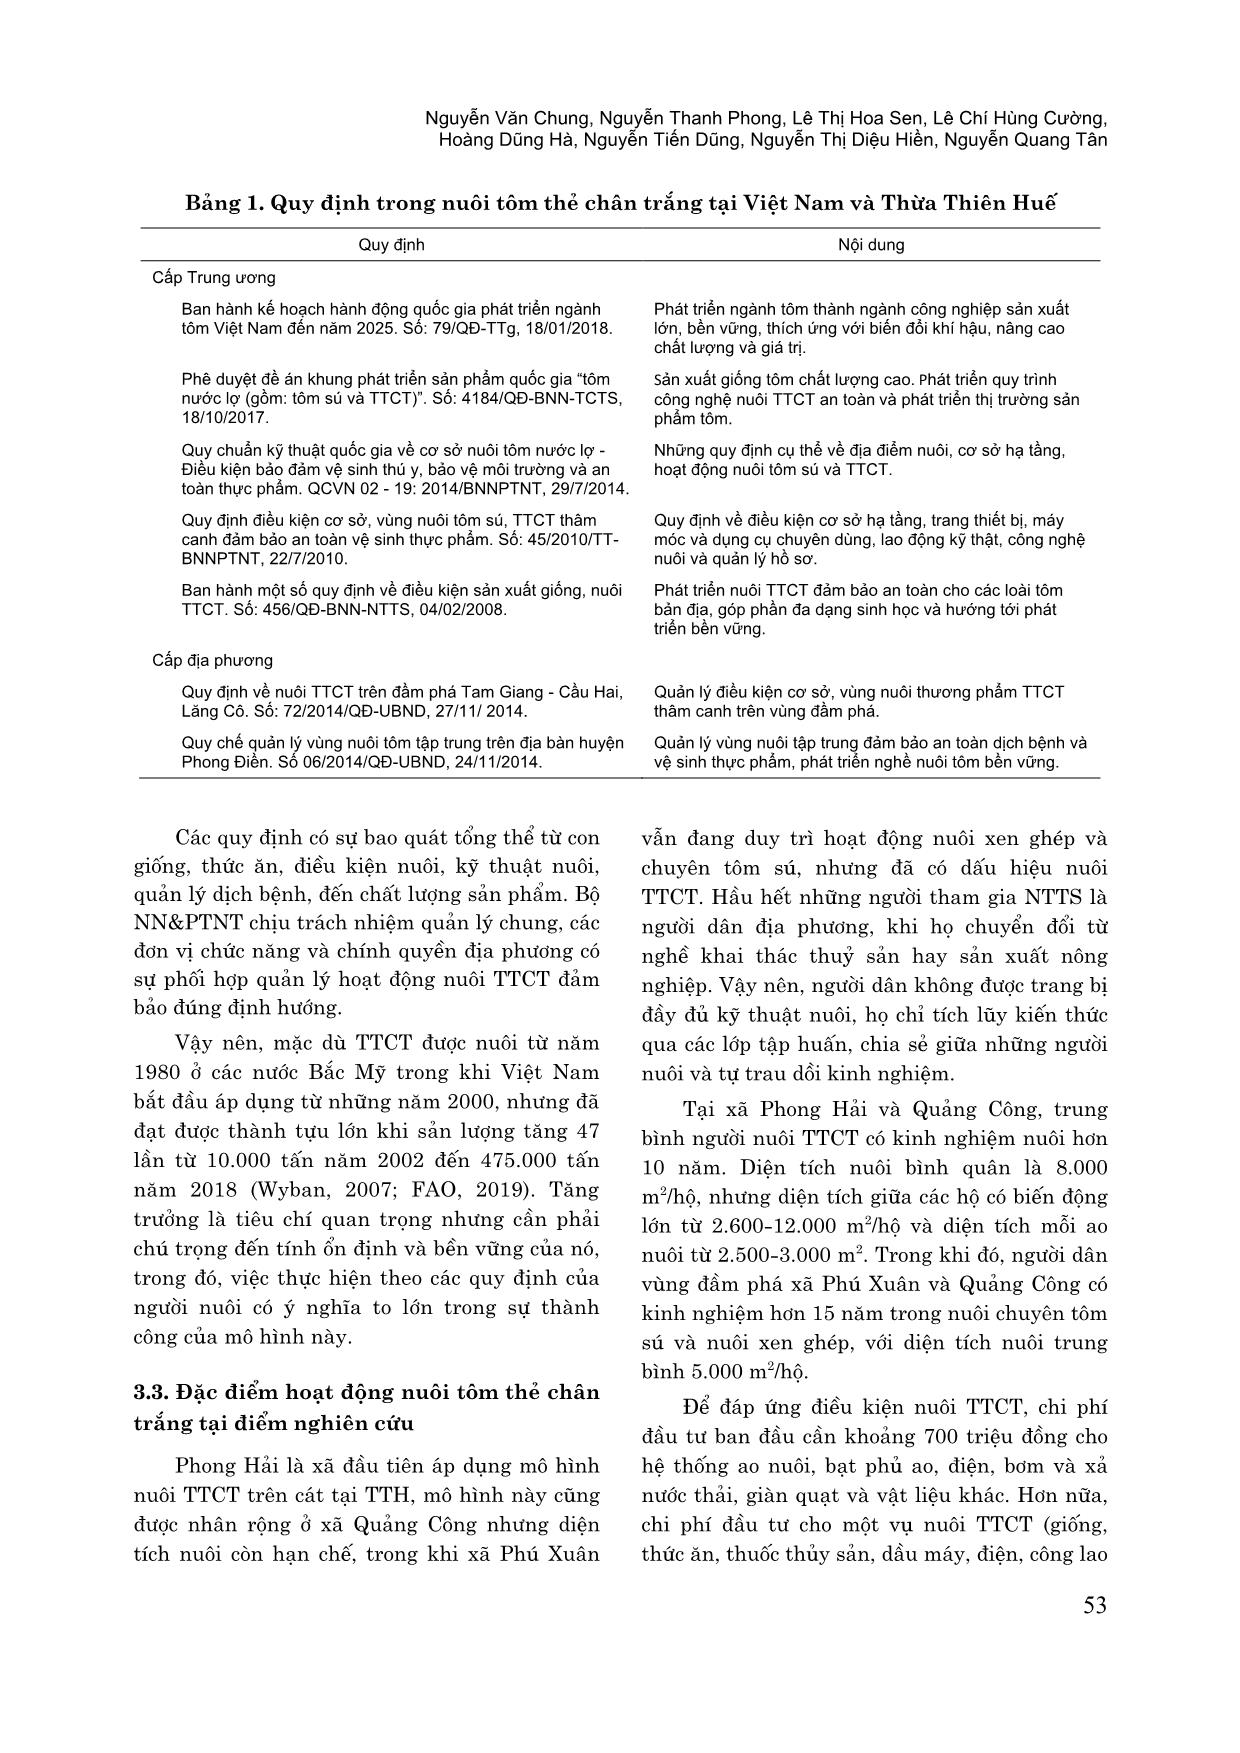 Khoảng cách giữa quy định và thực hiện trong nuôi tôm thẻ chân trắng tại Thừa Thiên Huế trang 4